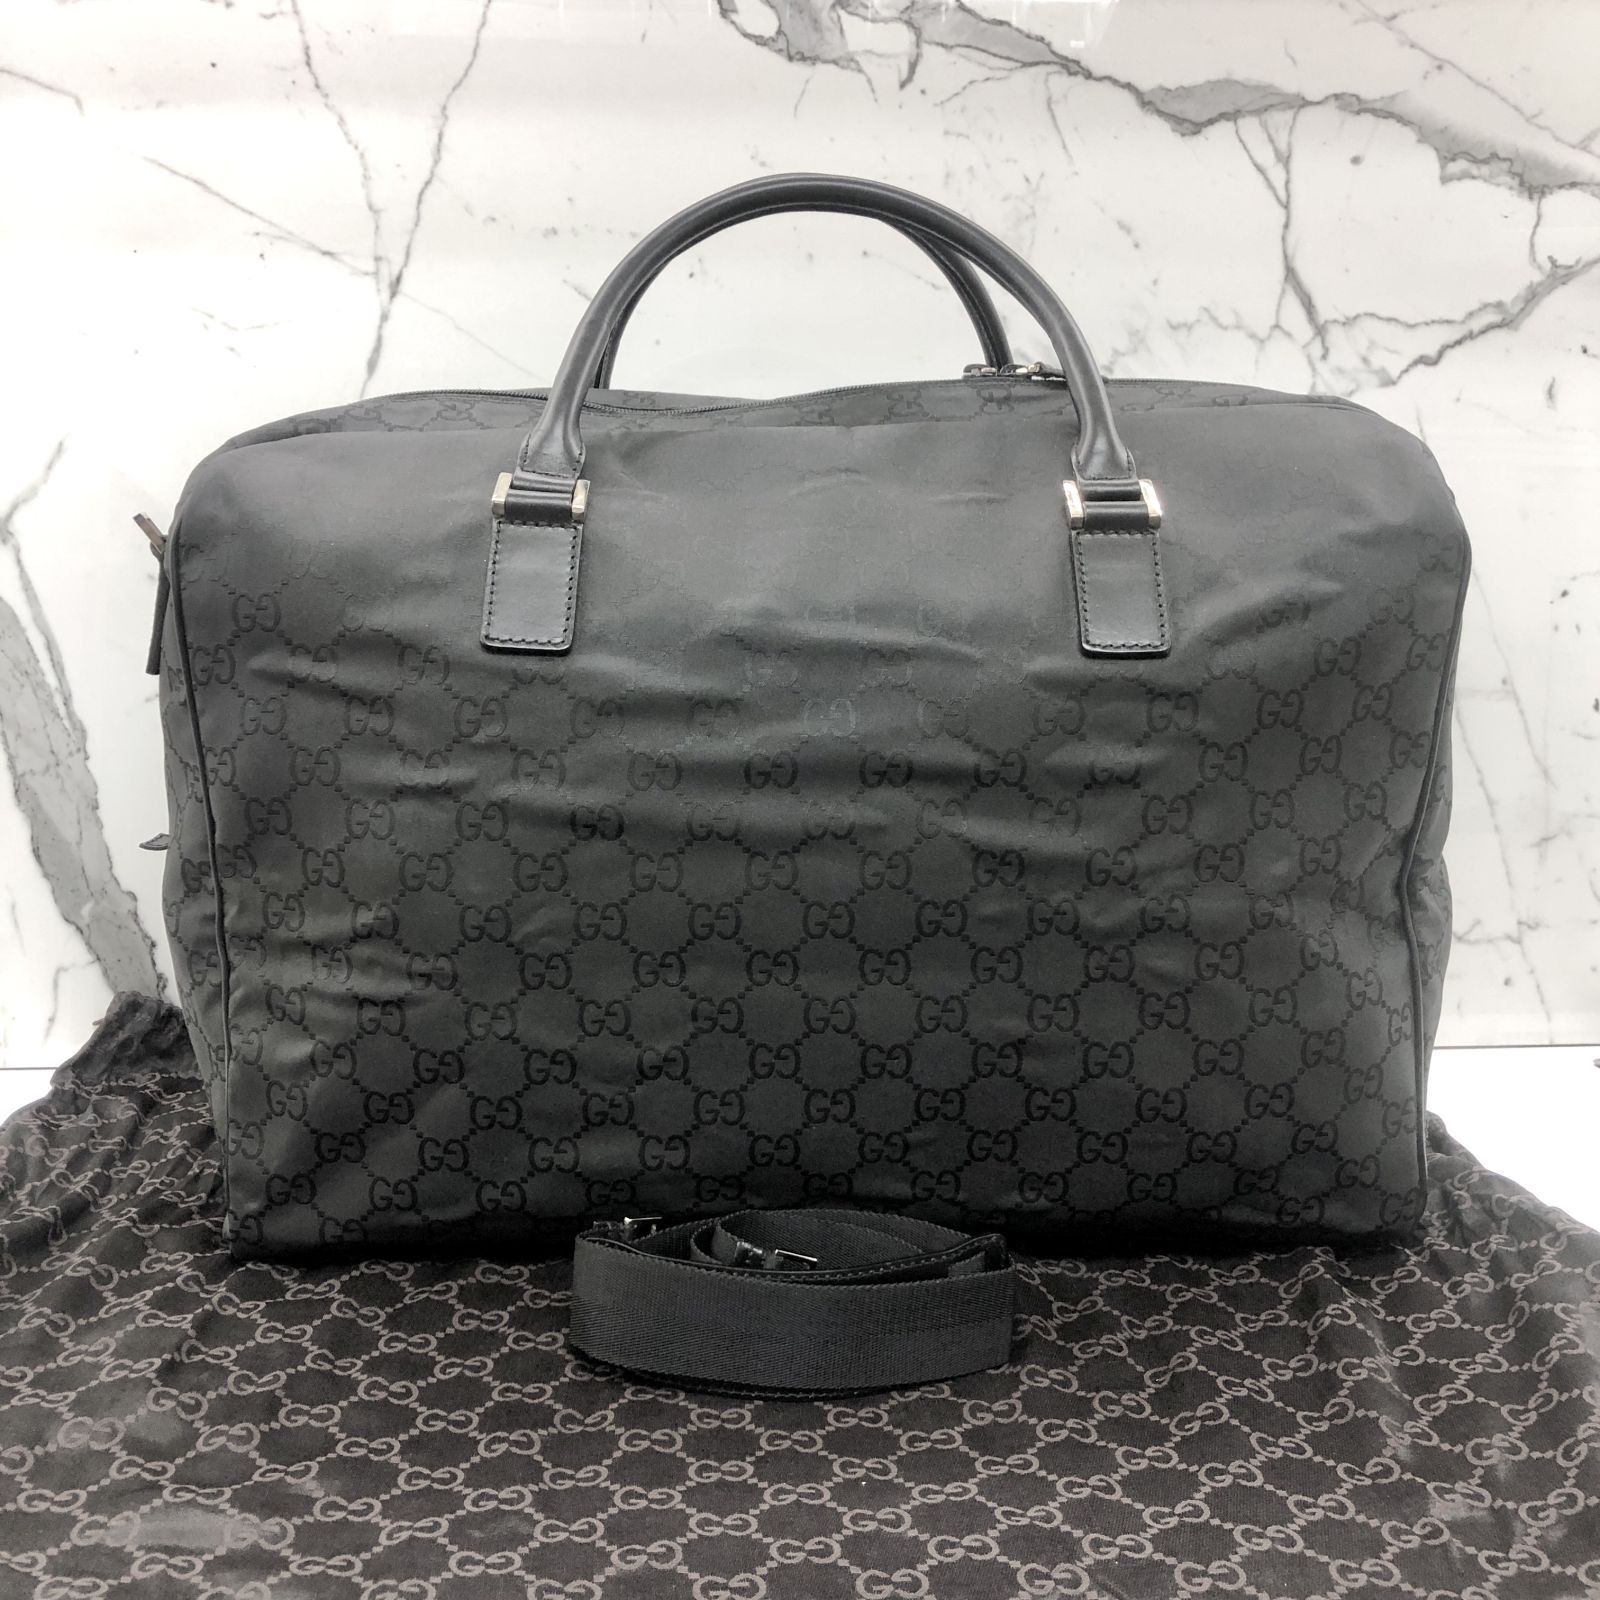 Authentic-Excellent-GUCCI-2WAY-Boston-Bag-Handbag-Black-Canvas